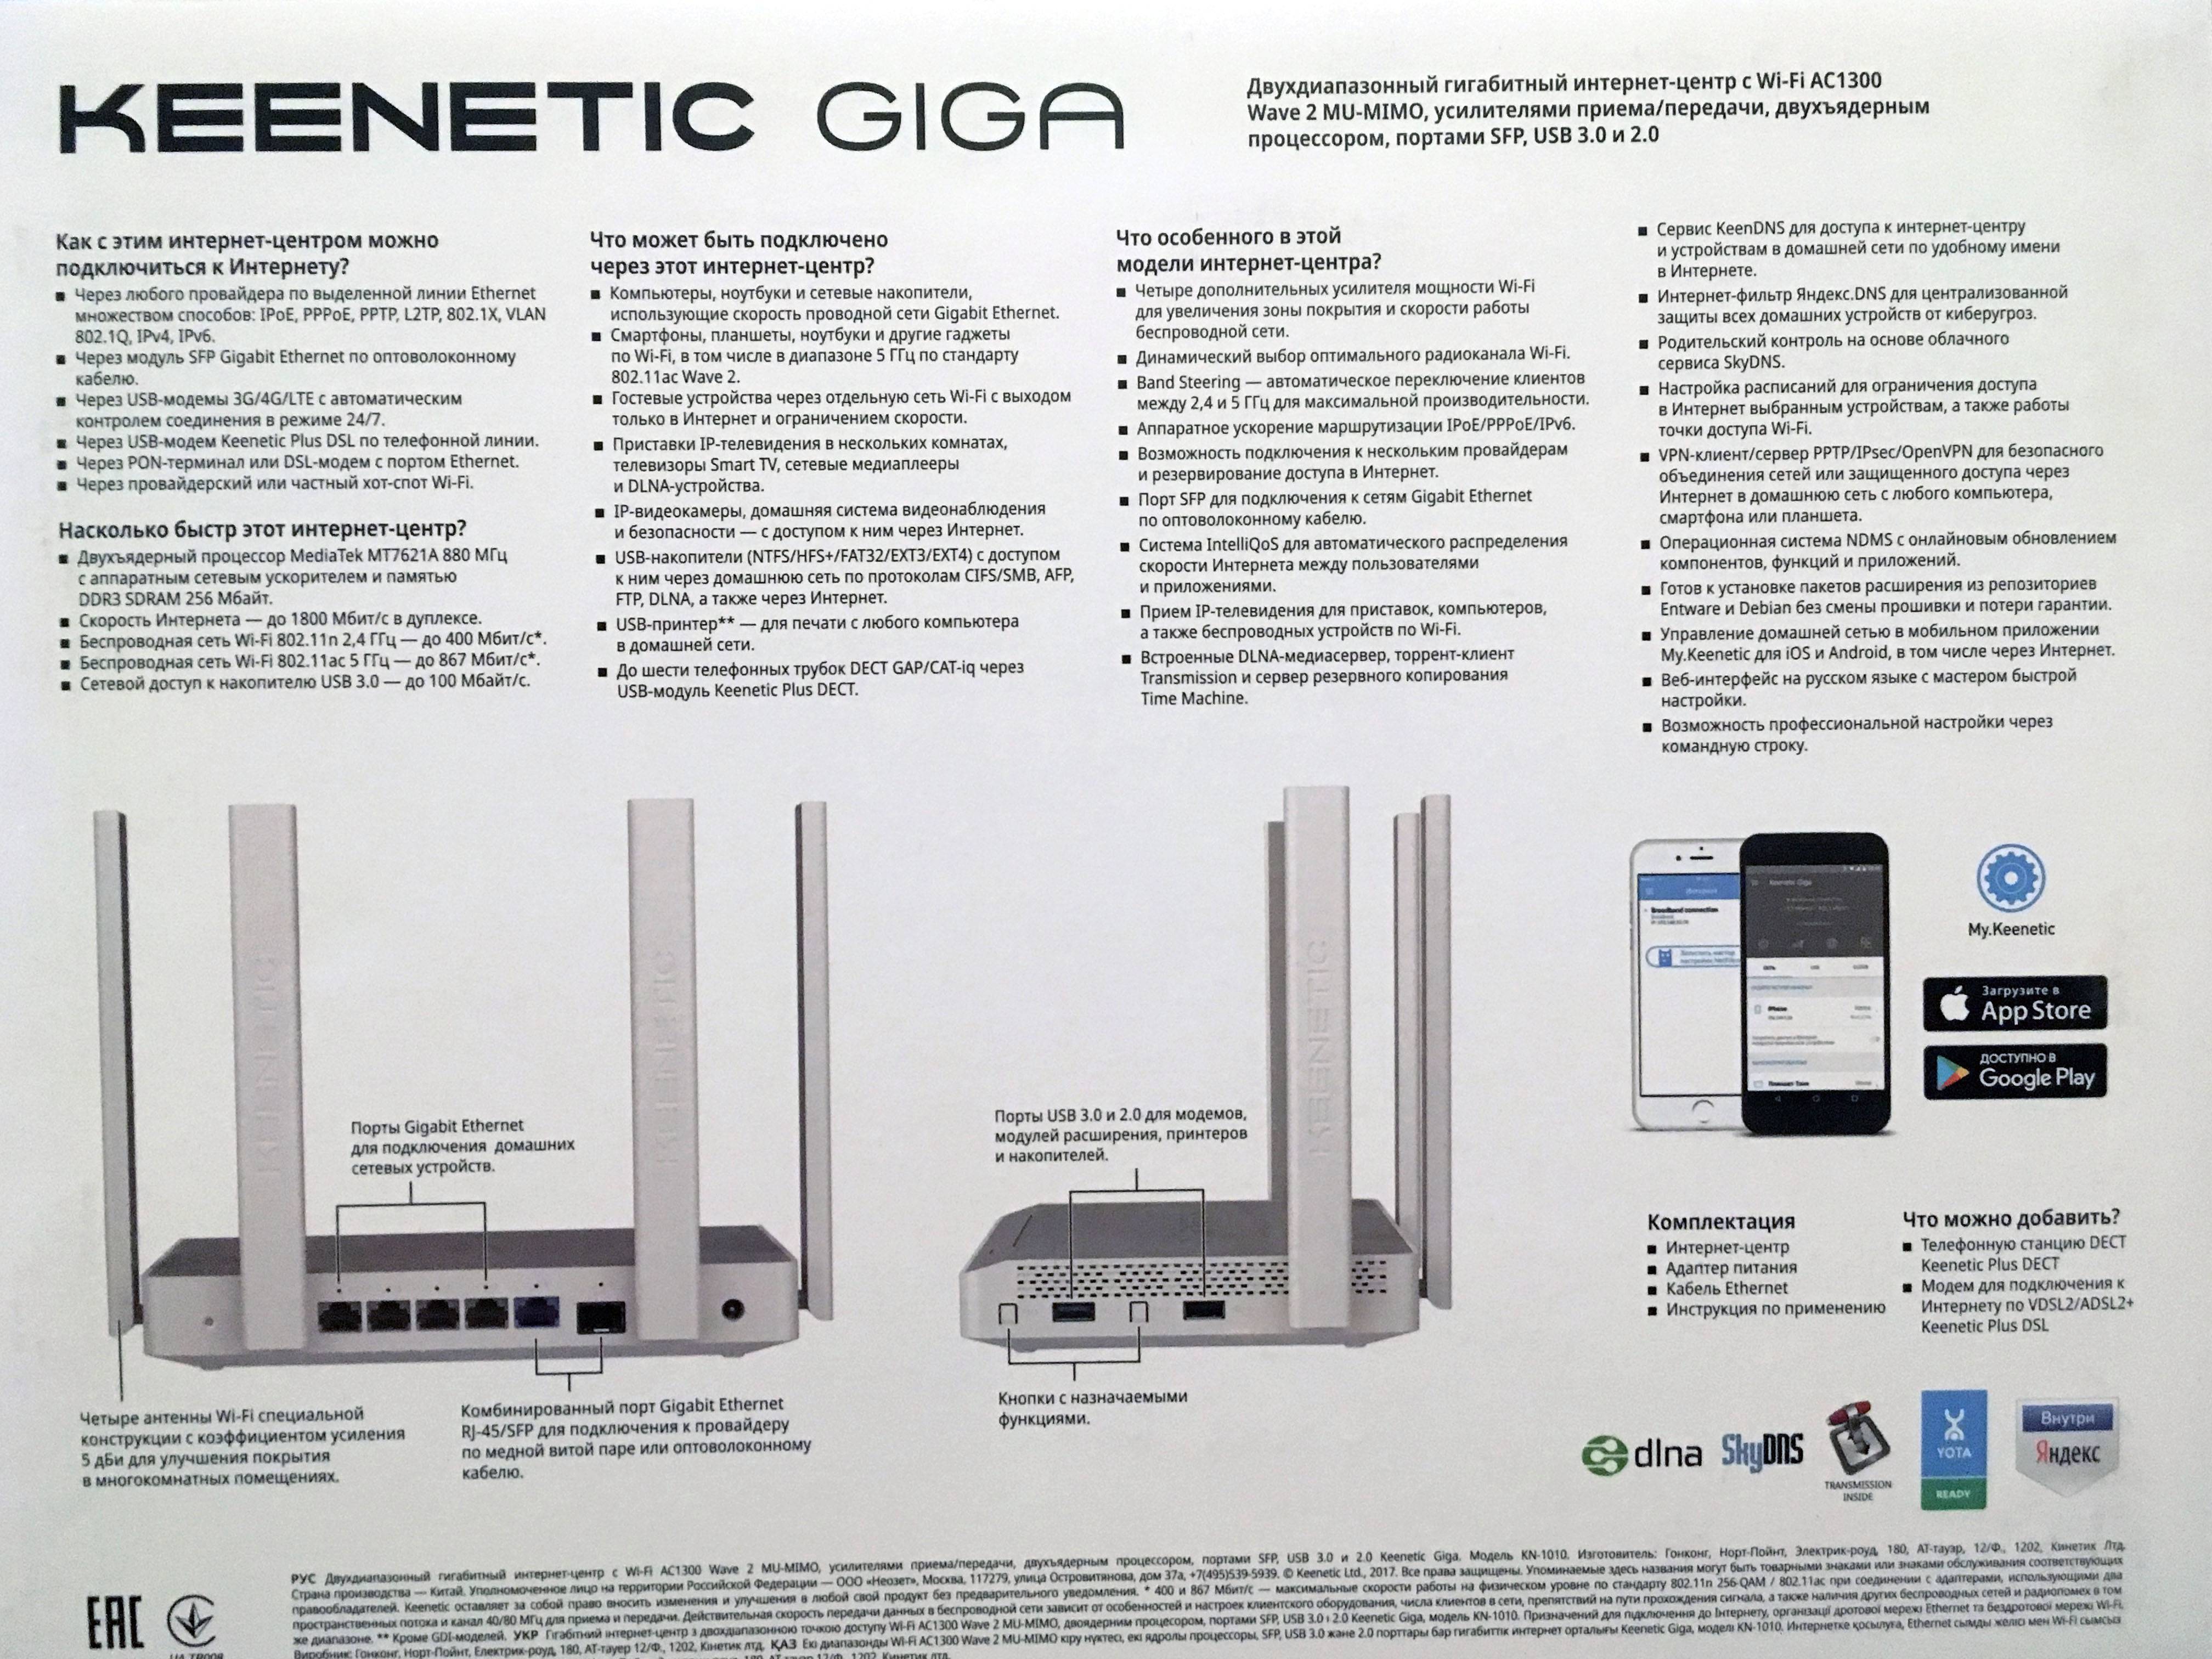 Keenetic giga kn-1010 - настройка и подключение роутера - настройка wifi роутера